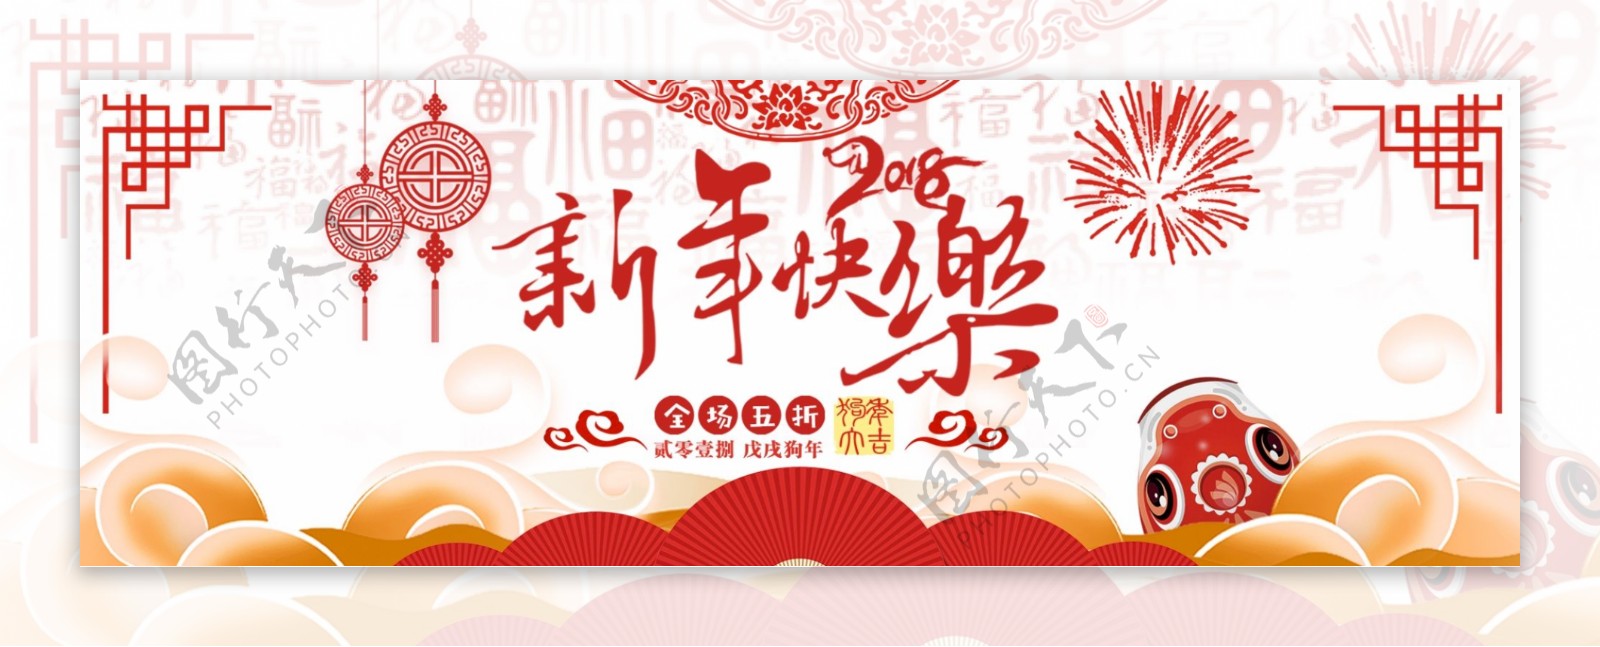 中国风祥云烟花鲤鱼新年春节淘宝海报